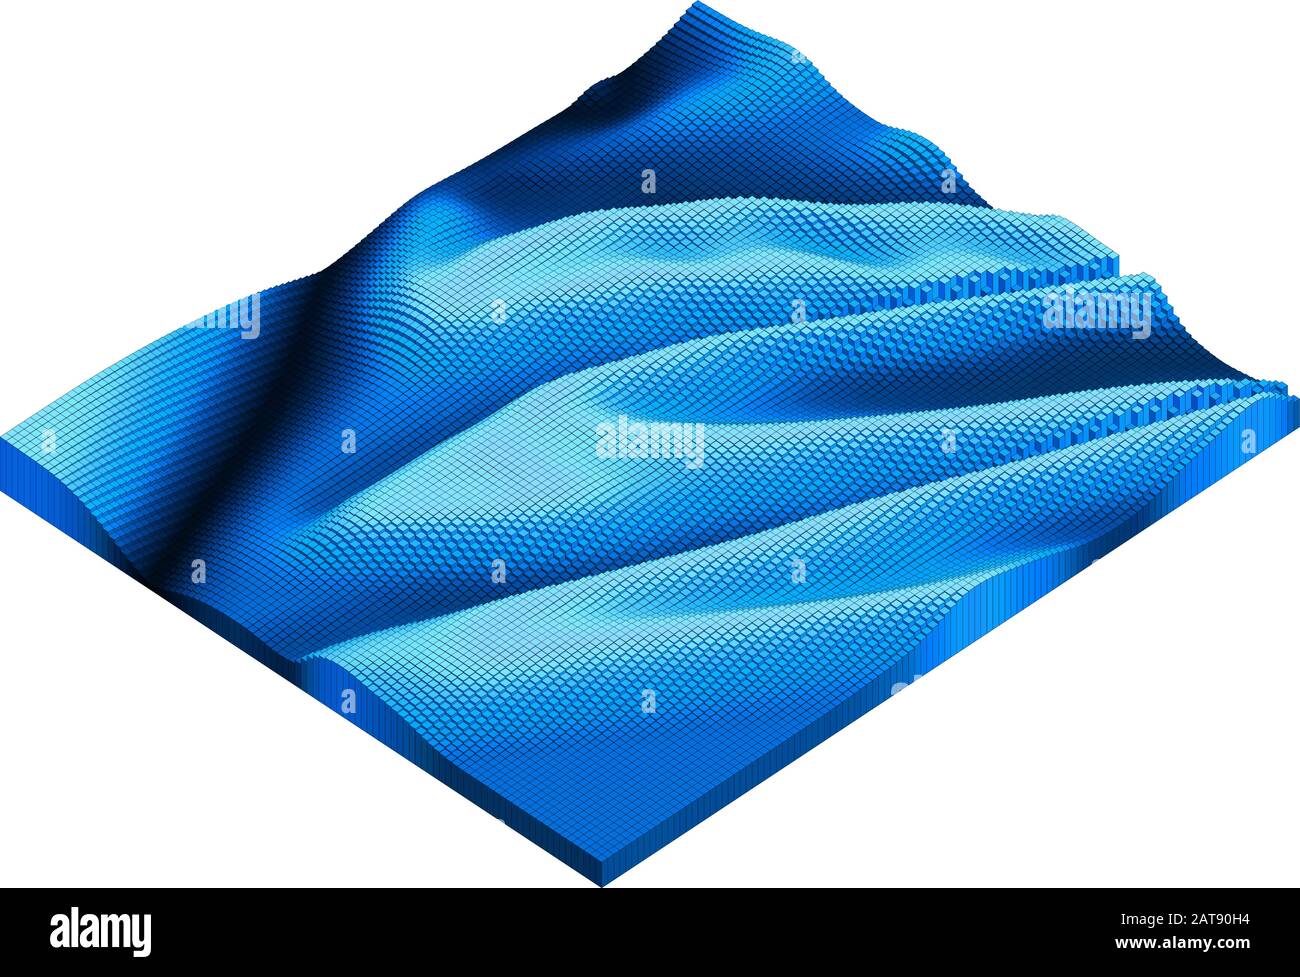 Voxel blu acqua pixel art campione - 3D brick wave - isometrica modello logaritmico rilievo concetto illustrazione Illustrazione Vettoriale